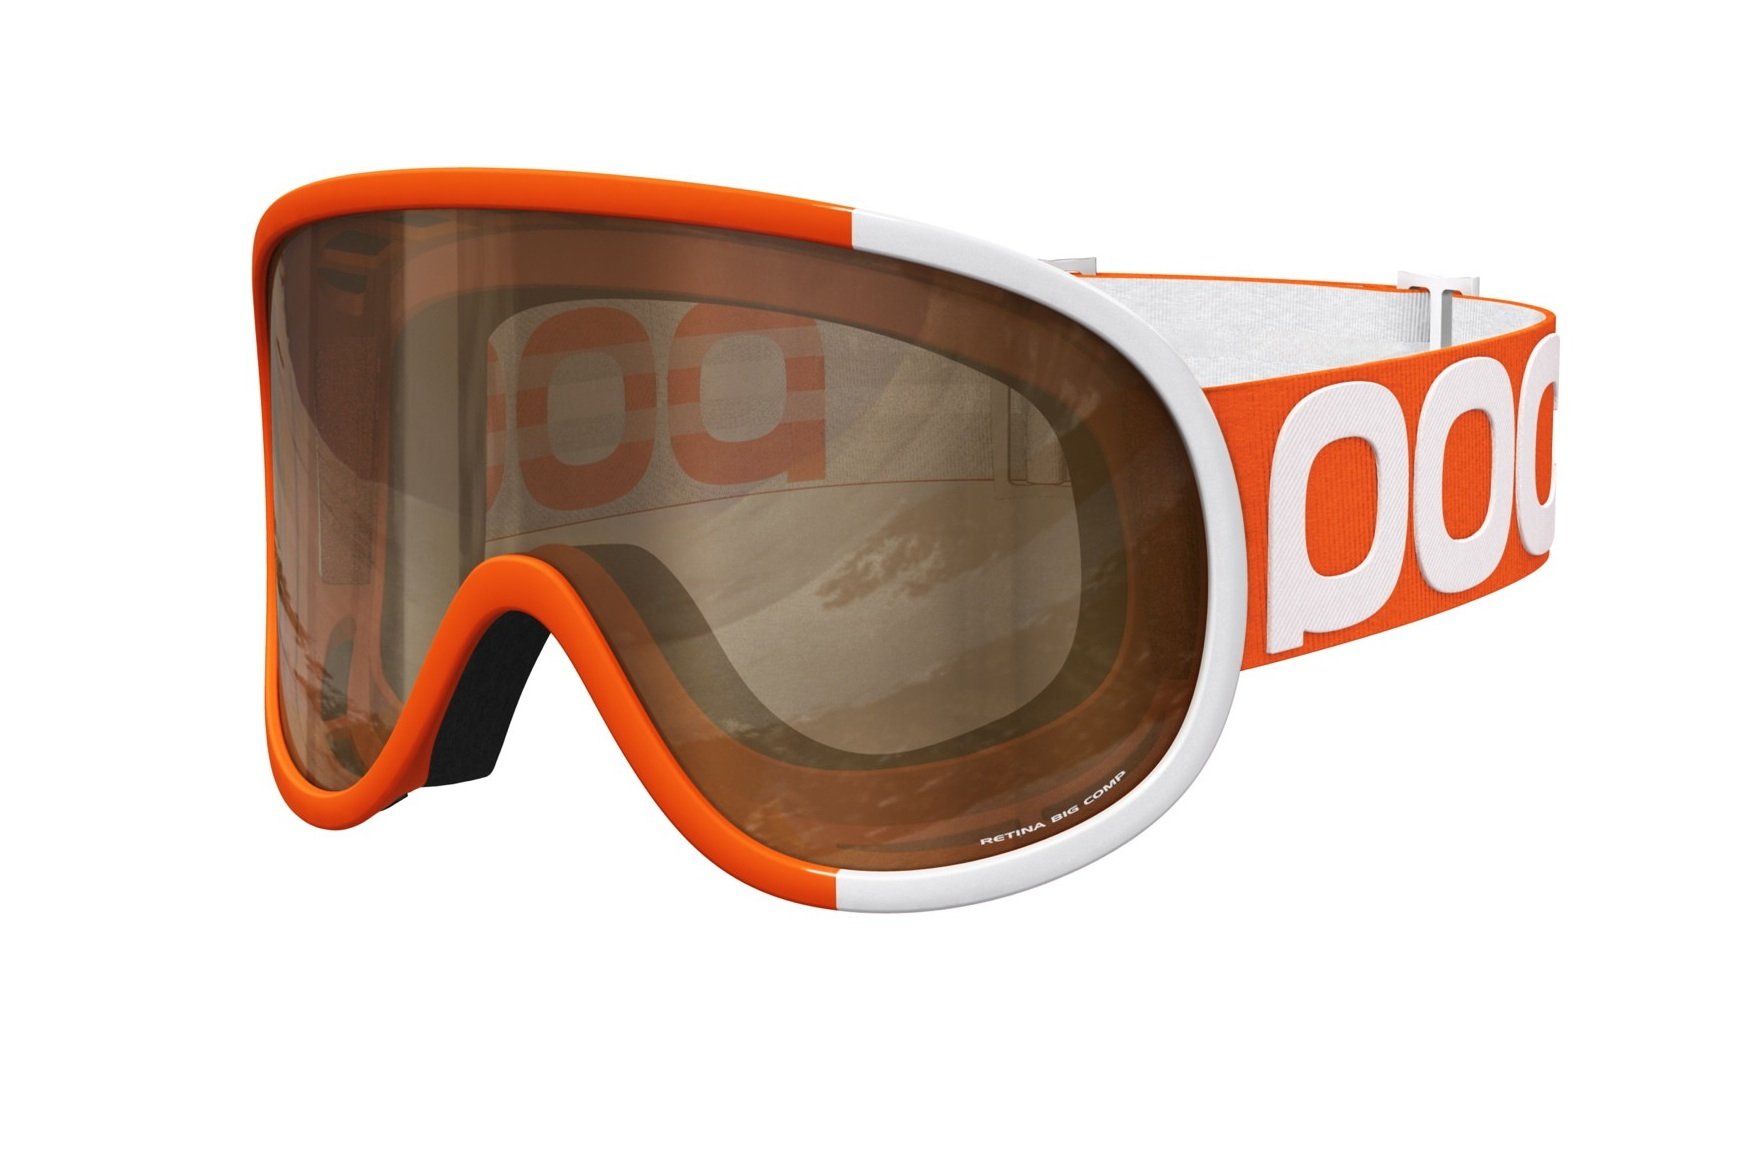 ISPO 2014 – POC Goggles: Skibrillen mit bester Carl Zeiss Optik für den optimalen Durchblick